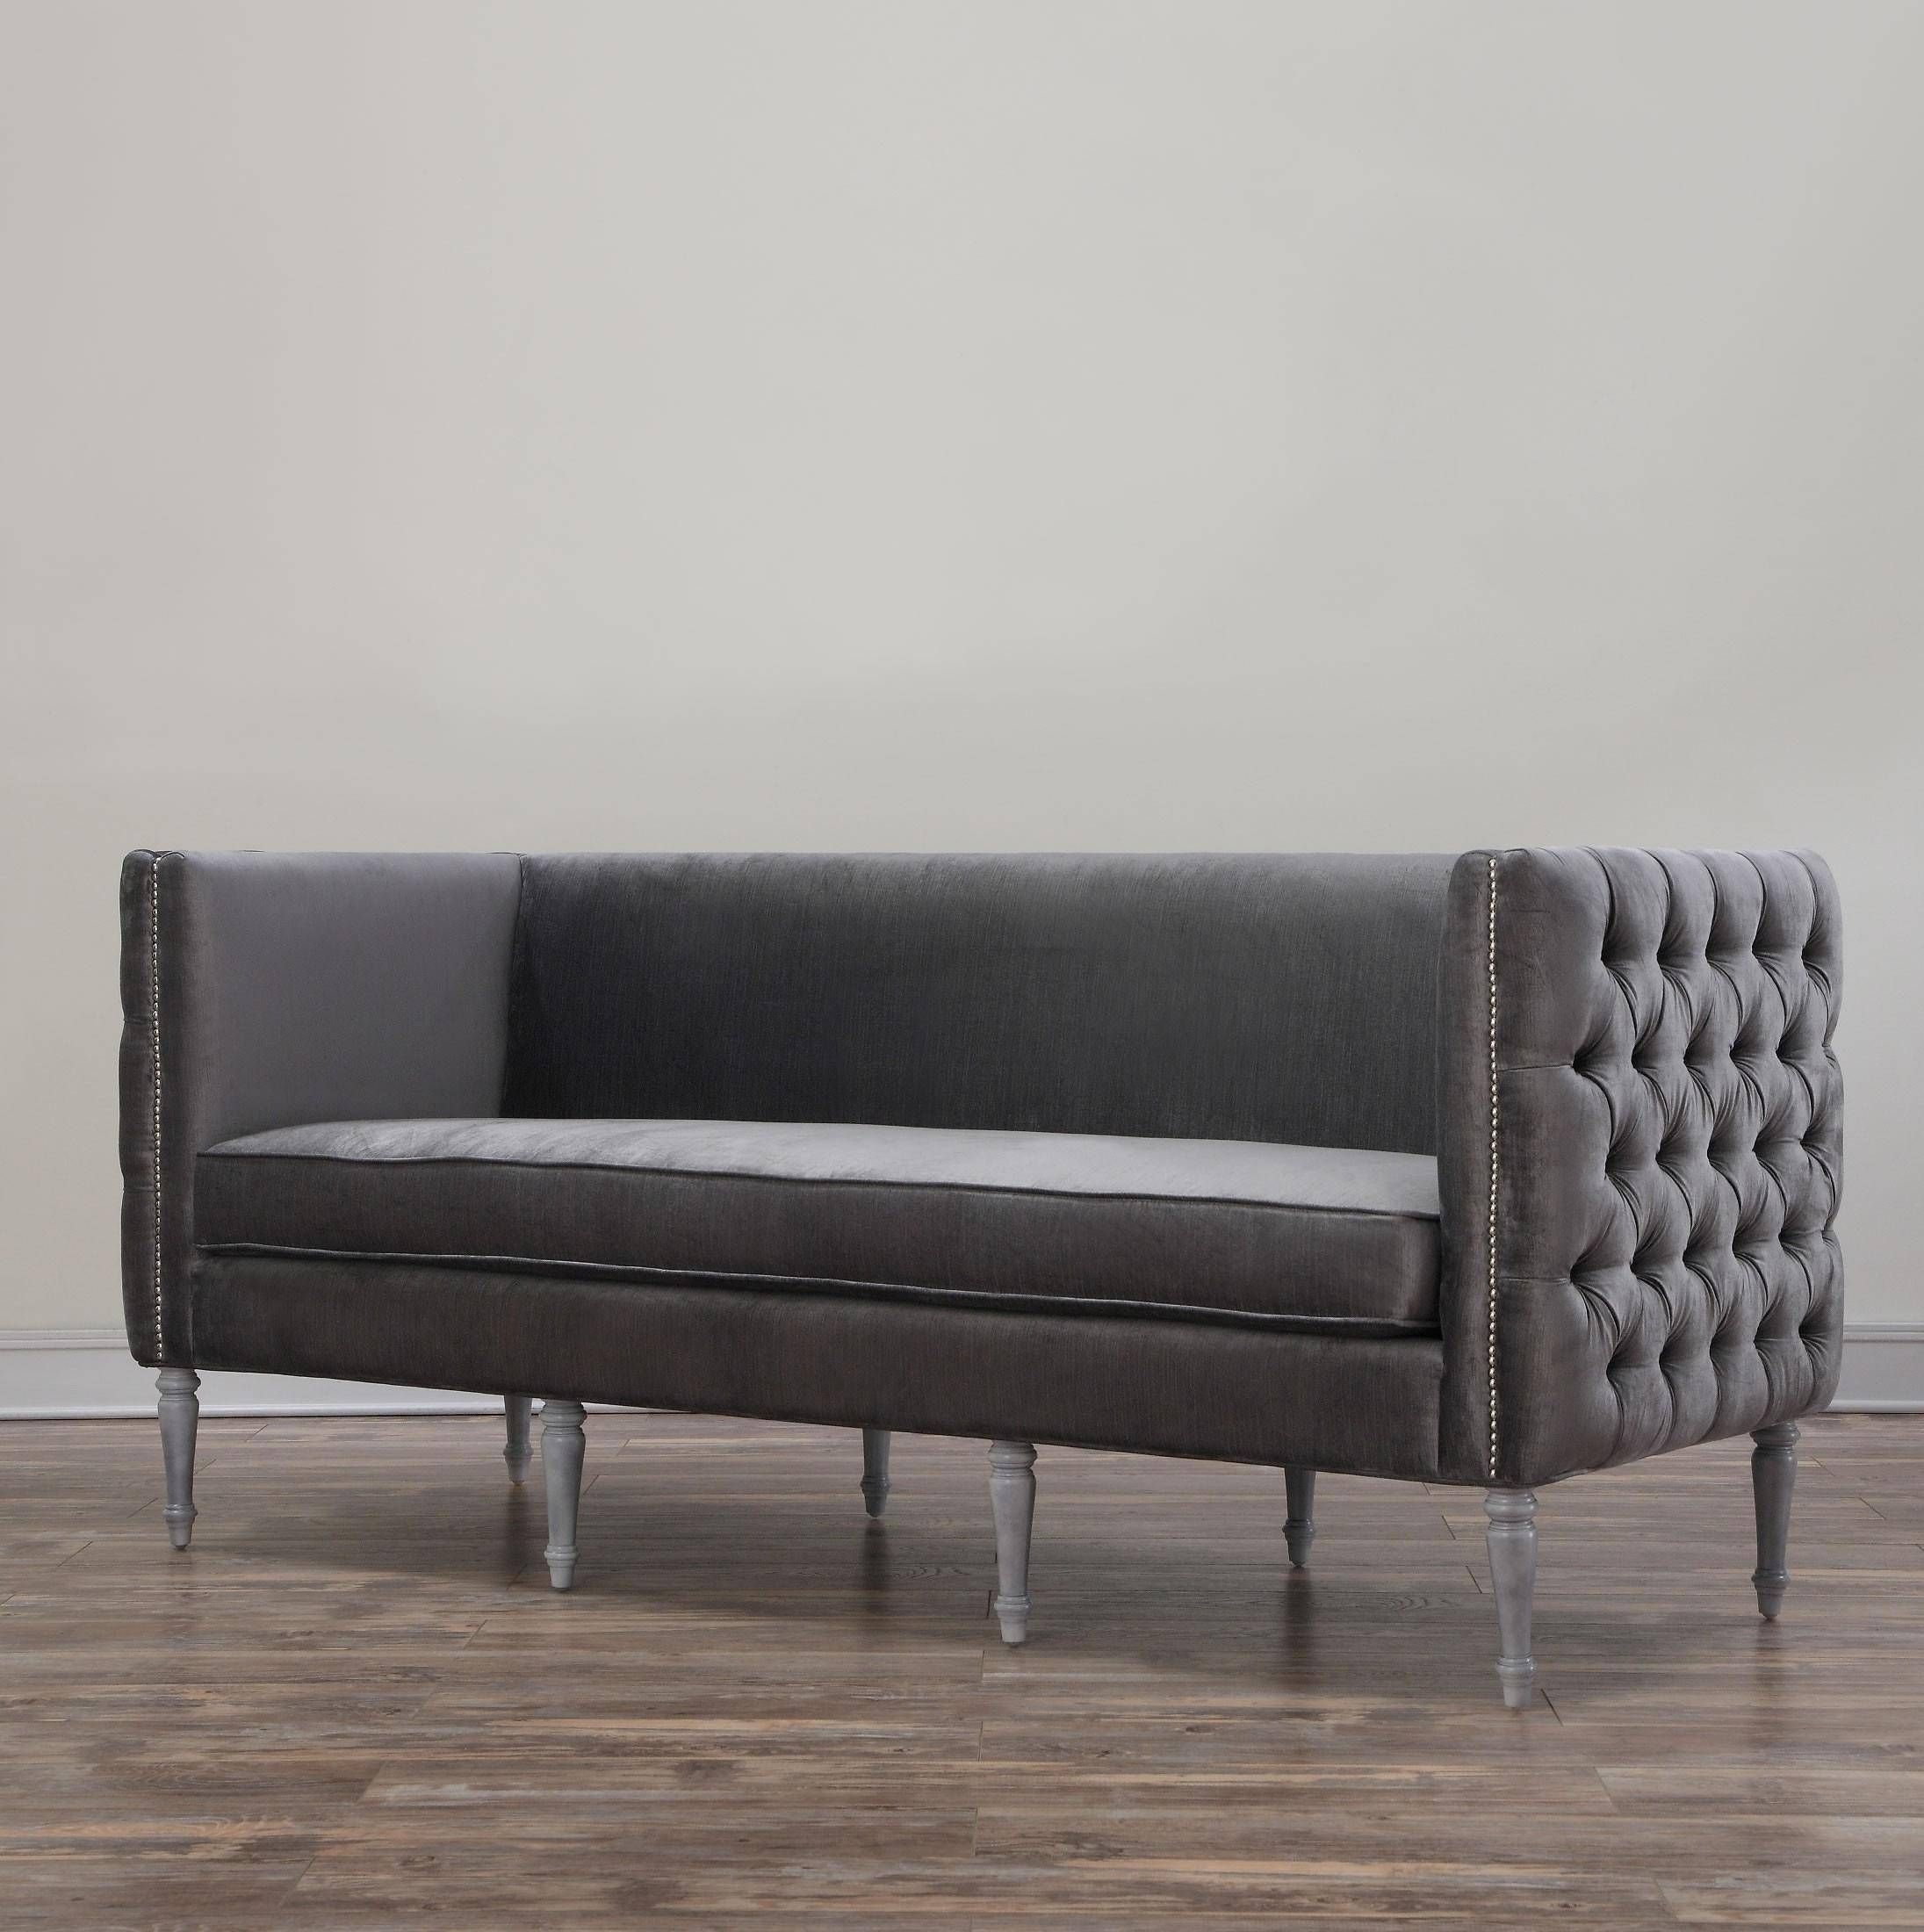 20 Collection Of Barrister Velvet Sofas | Sofa Ideas With Regard To Barrister Velvet Sofas (View 8 of 15)